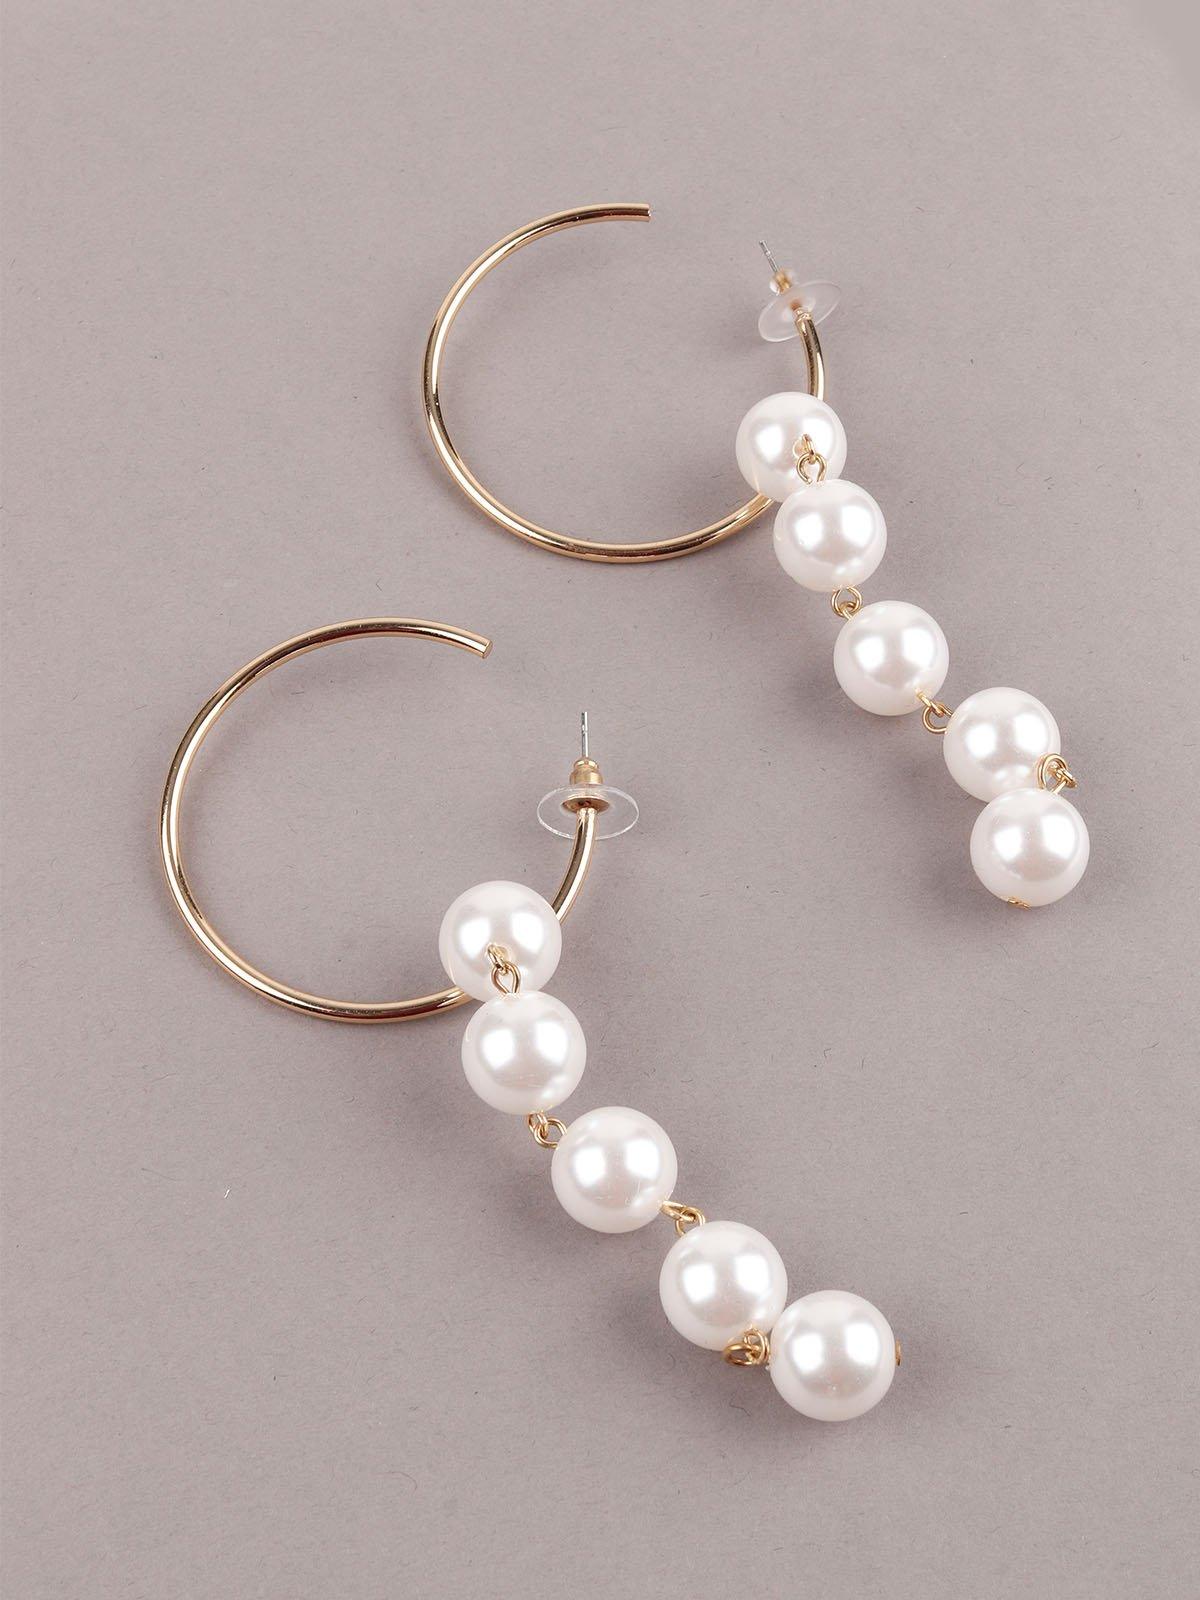 Women's Golden Hoop Earrings With Pearls - Odette